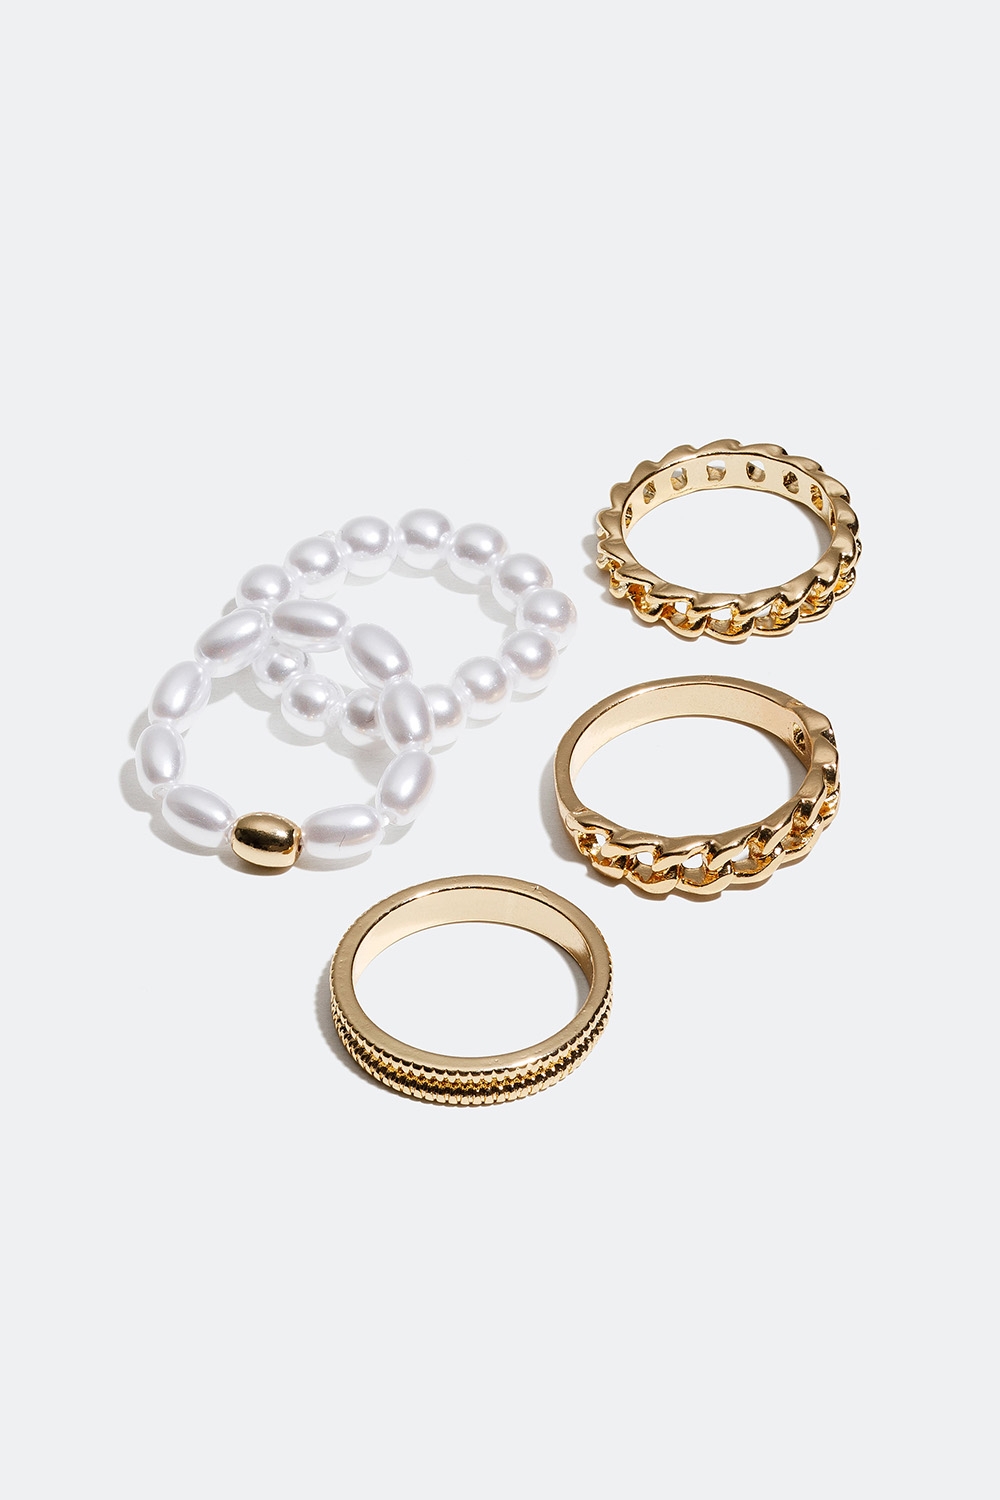 Gullfargdede ringer med perler og lenkedesign, 5 pakning i gruppen Smykker / Ringer / Flerpakning hos Glitter (256000742)